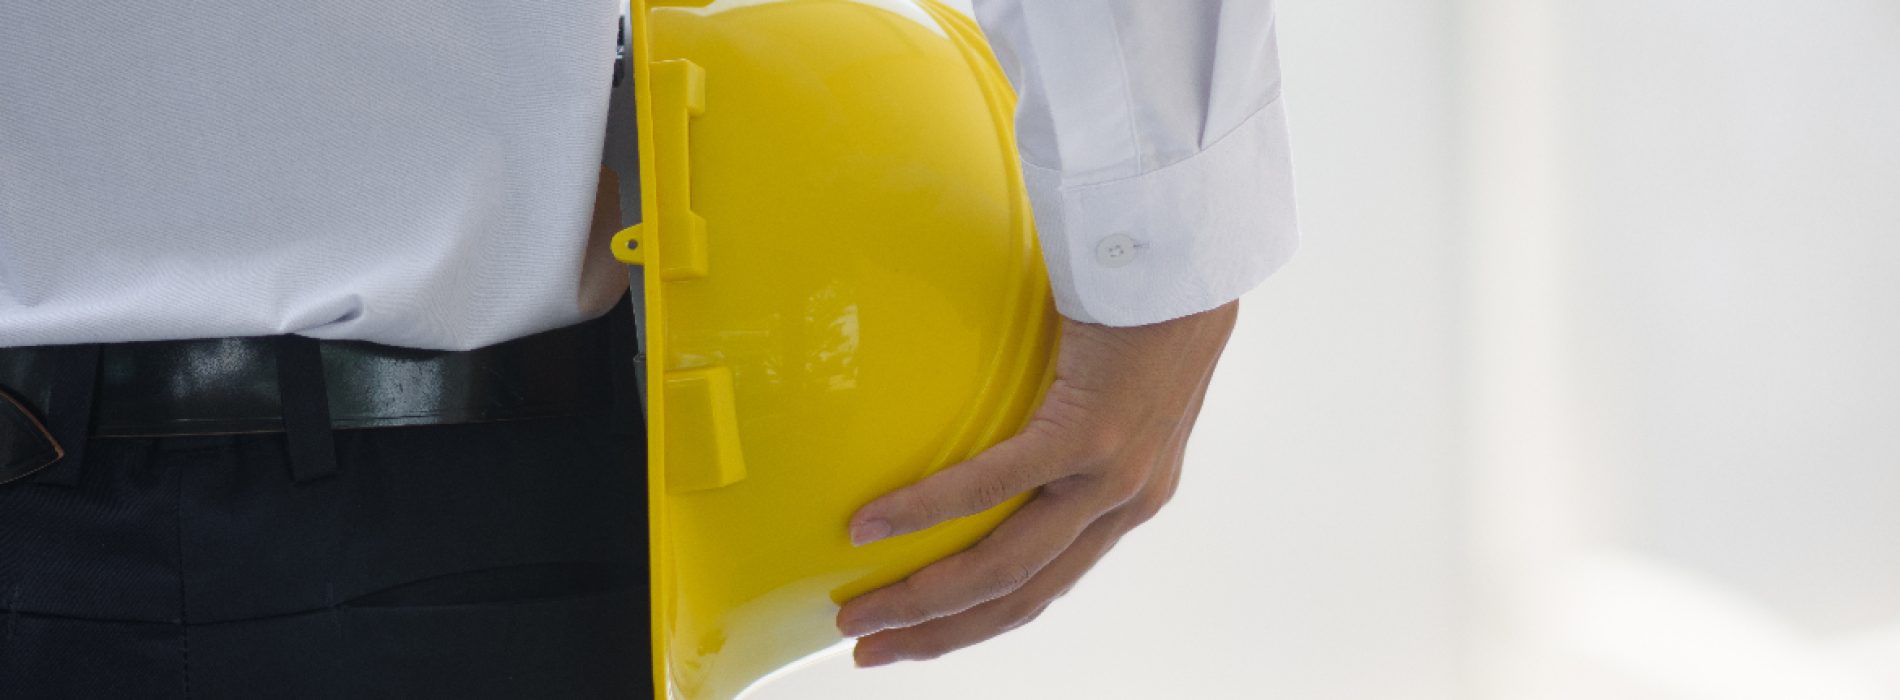 PNRR – sicurezza sui luoghi di lavoro: arriva norma per prevenzione